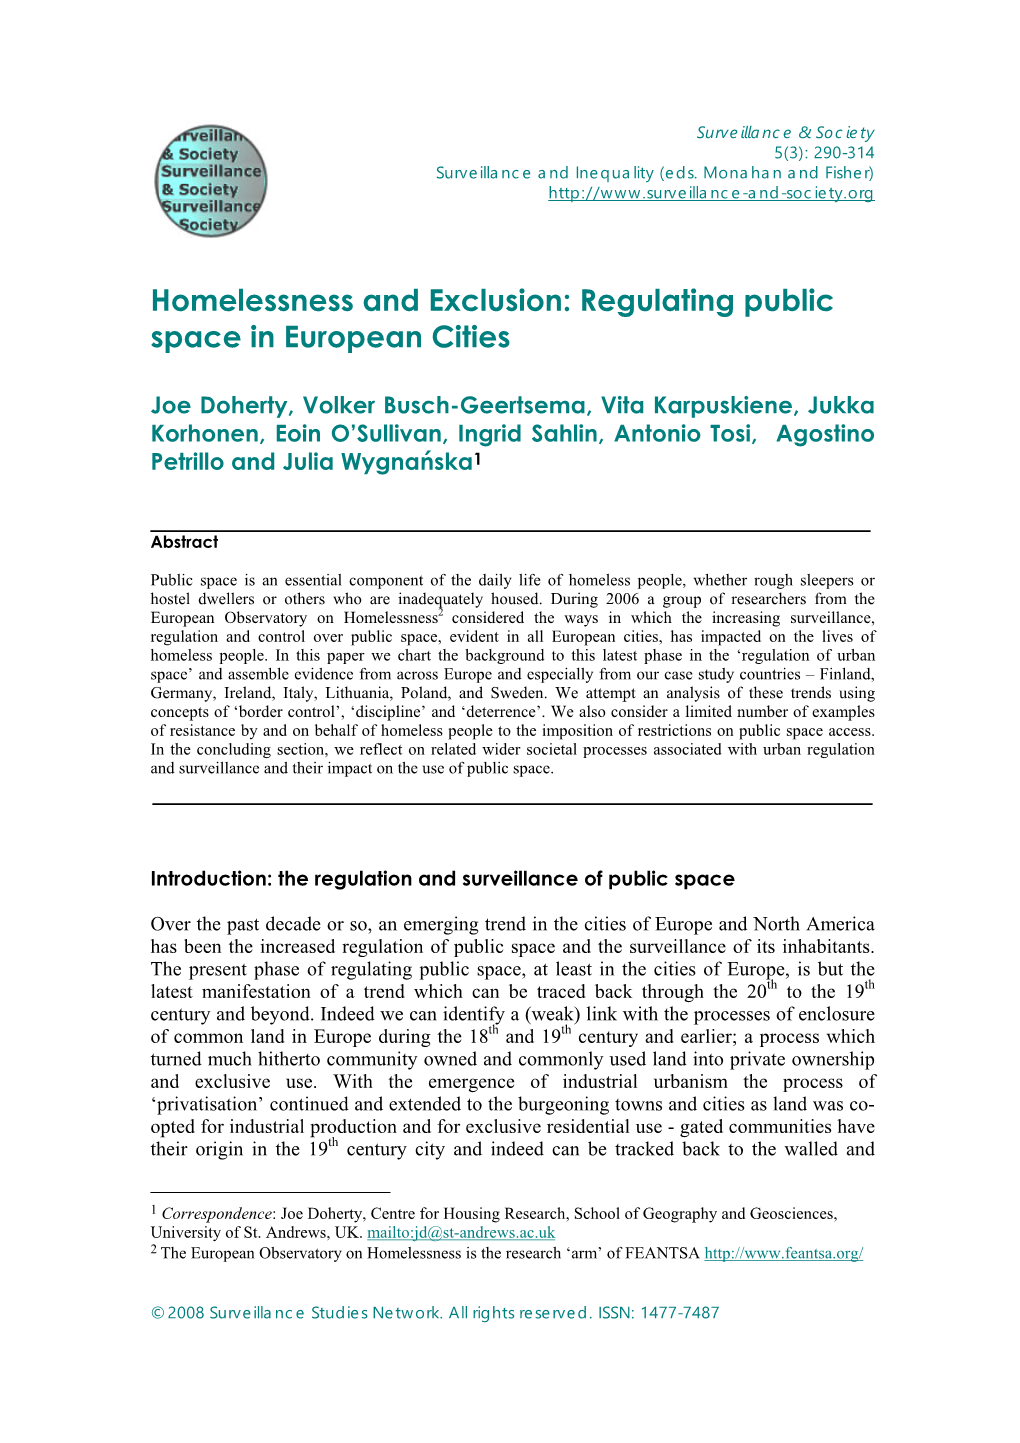 Regulating Public Space in European Cities